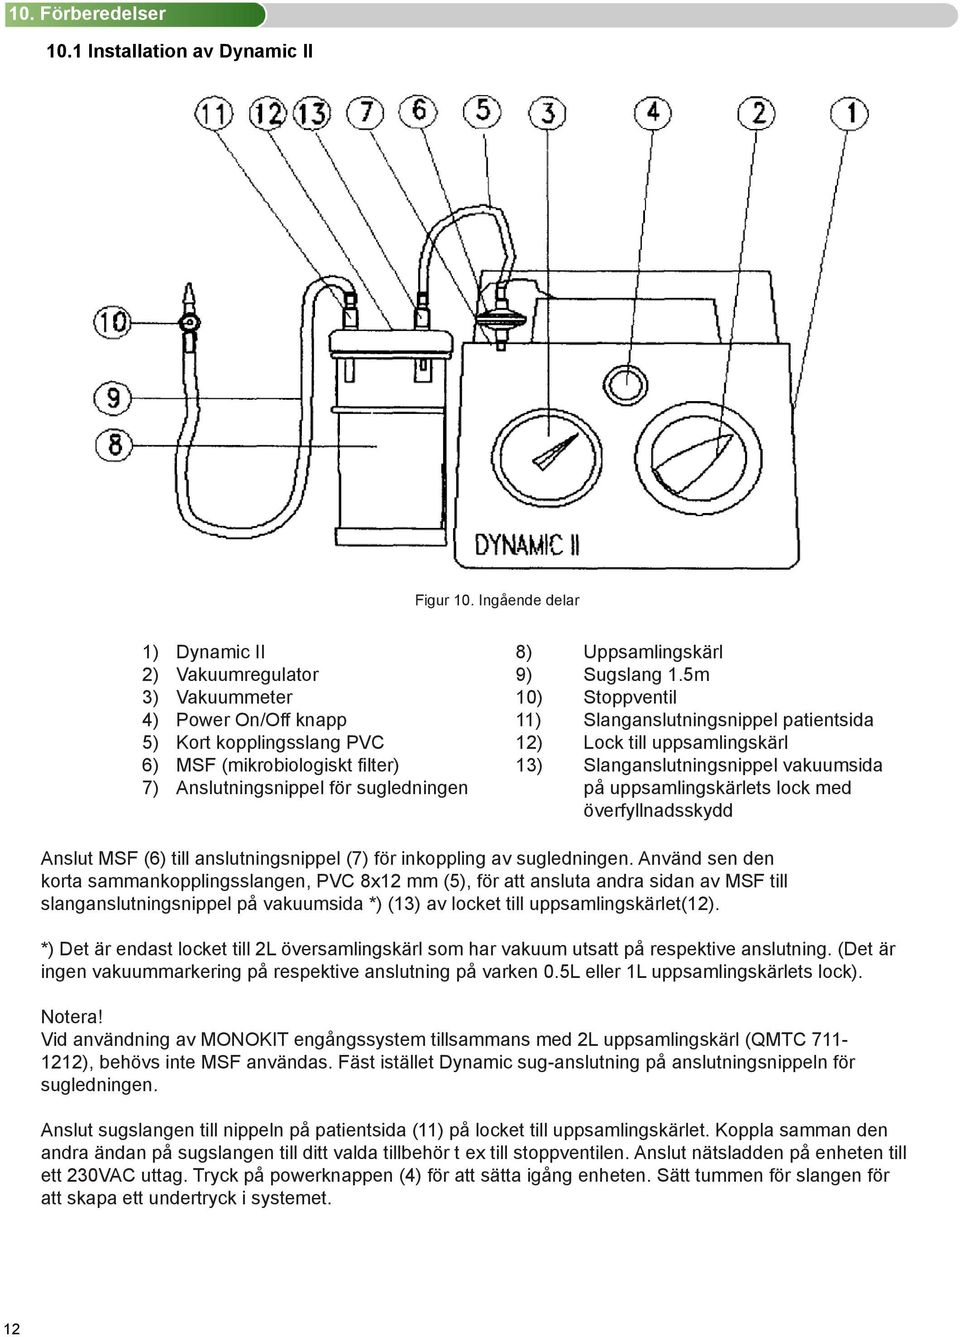 Slanganslutningsnippel vakuumsida 7) Anslutningsnippel för sugledningen på uppsamlingskärlets lock med överfyllnadsskydd Anslut MSF (6) till anslutningsnippel (7) för inkoppling av sugledningen.